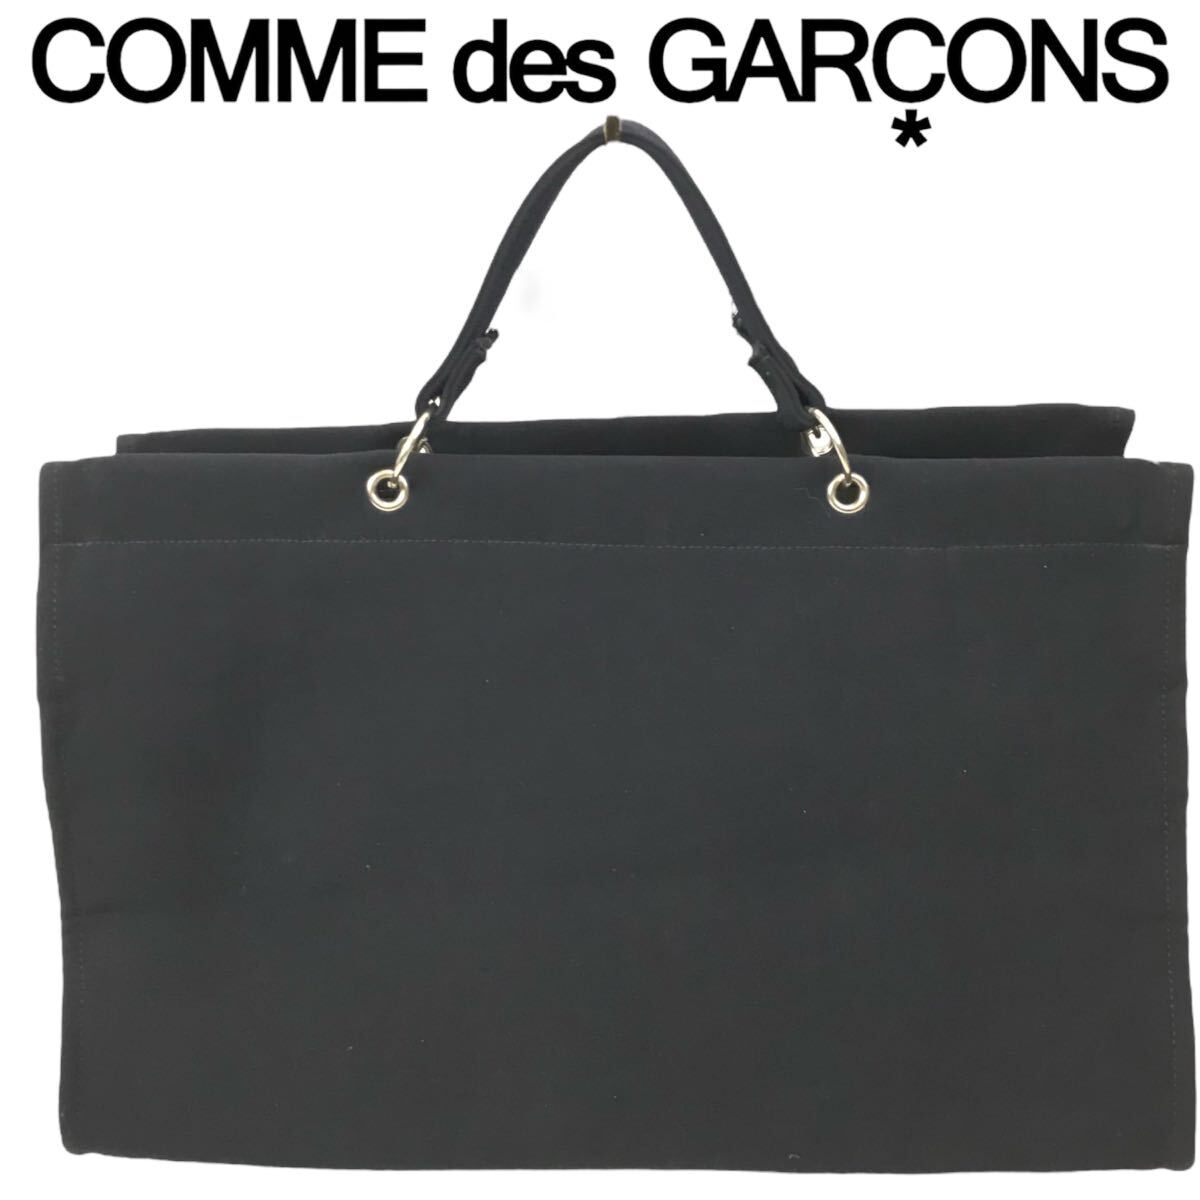 j151 Comme des Garcons コムデギャルソン トートバッグ キャンバス ネイビー ハンドバッグ レディース メンズ 男女兼用 GK102010 正規品の画像3